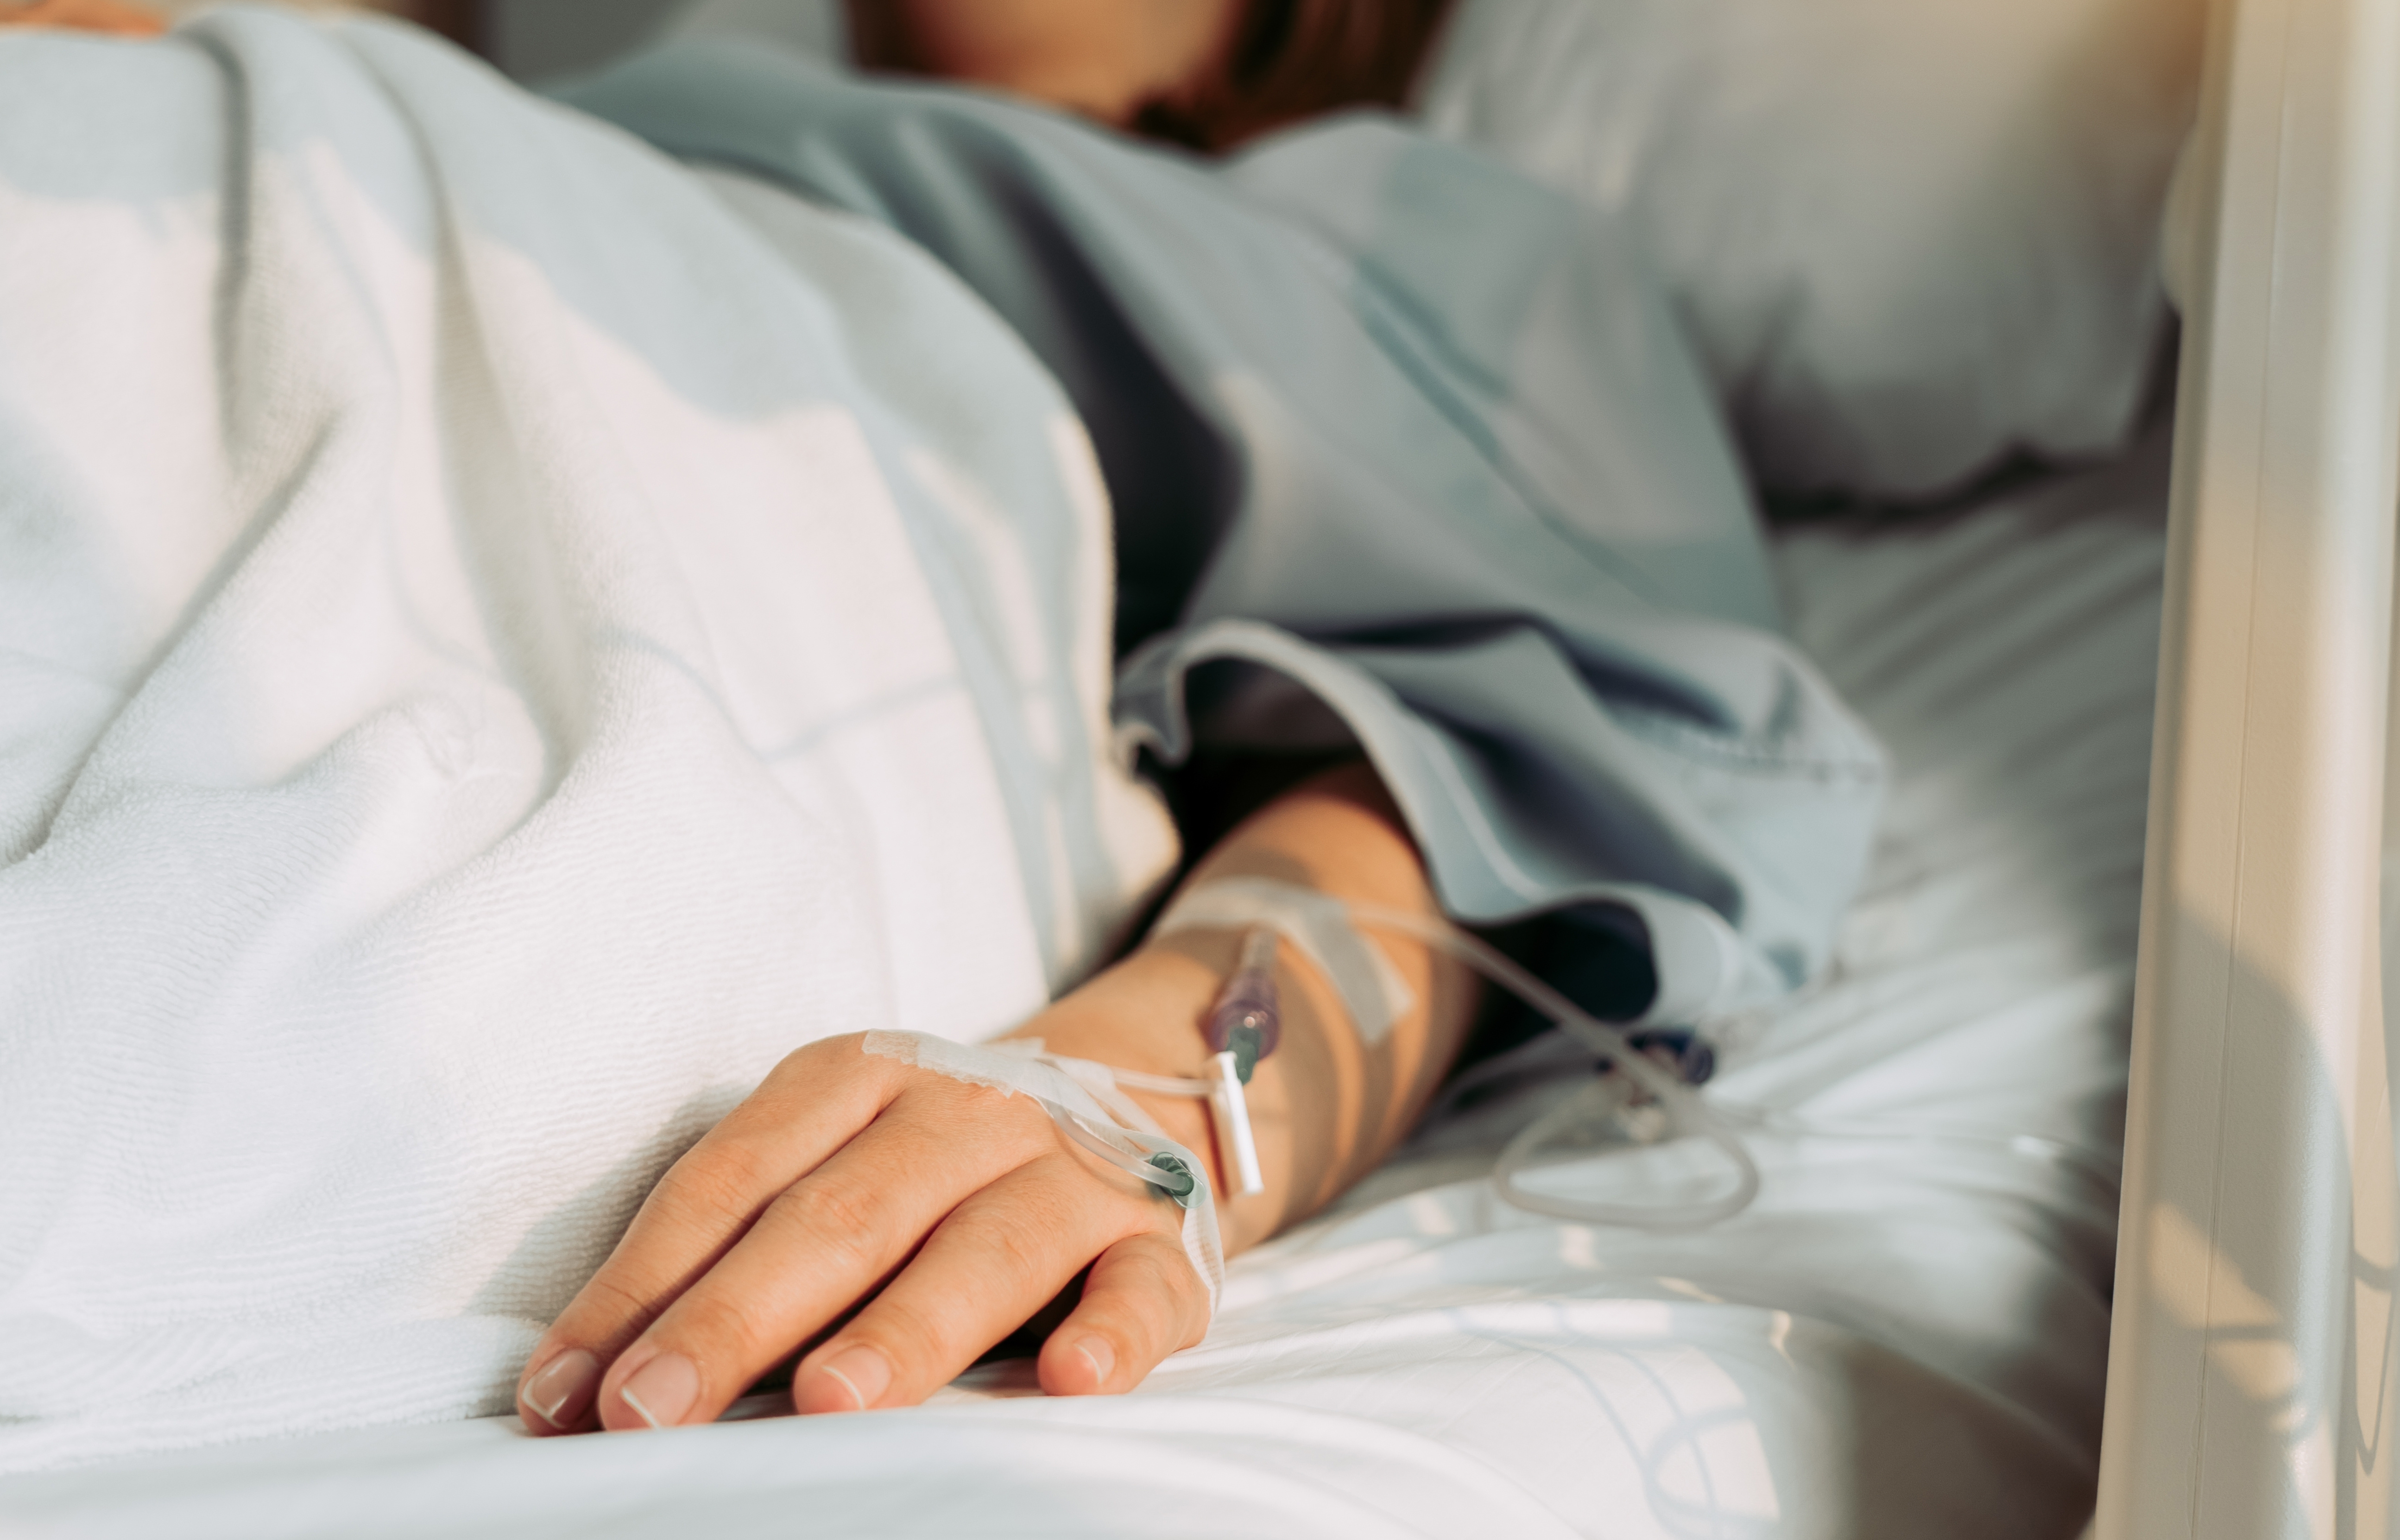 Woman lying sick in hospital. | Source: Shutterstock